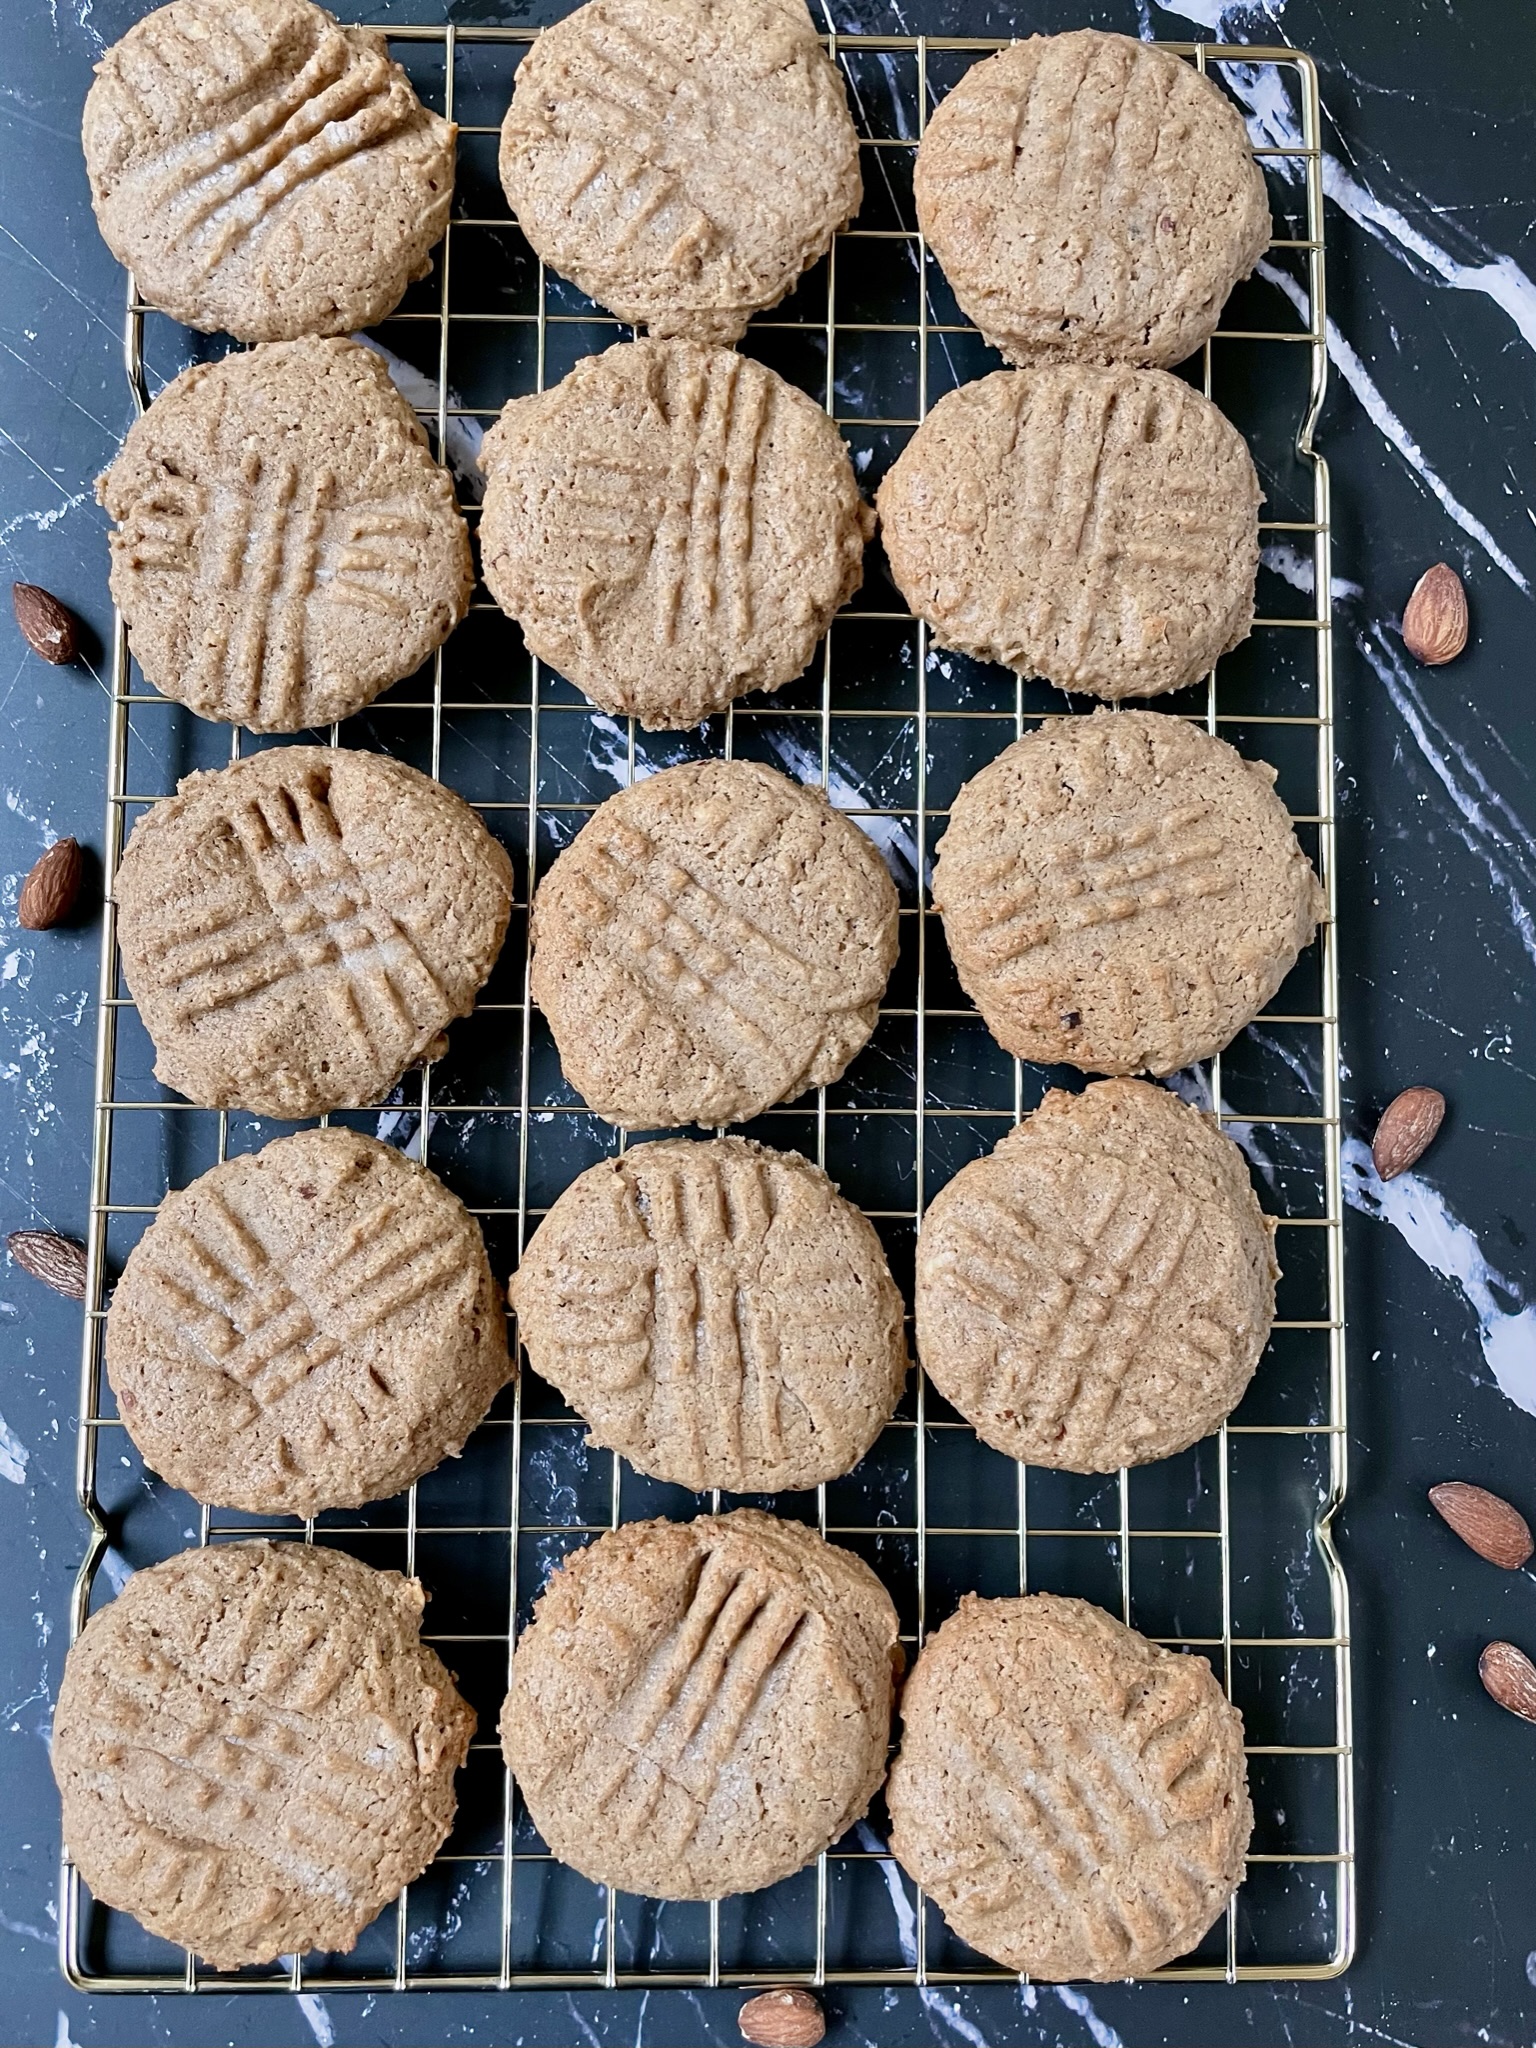 Baked sourdough almond butter cookies.